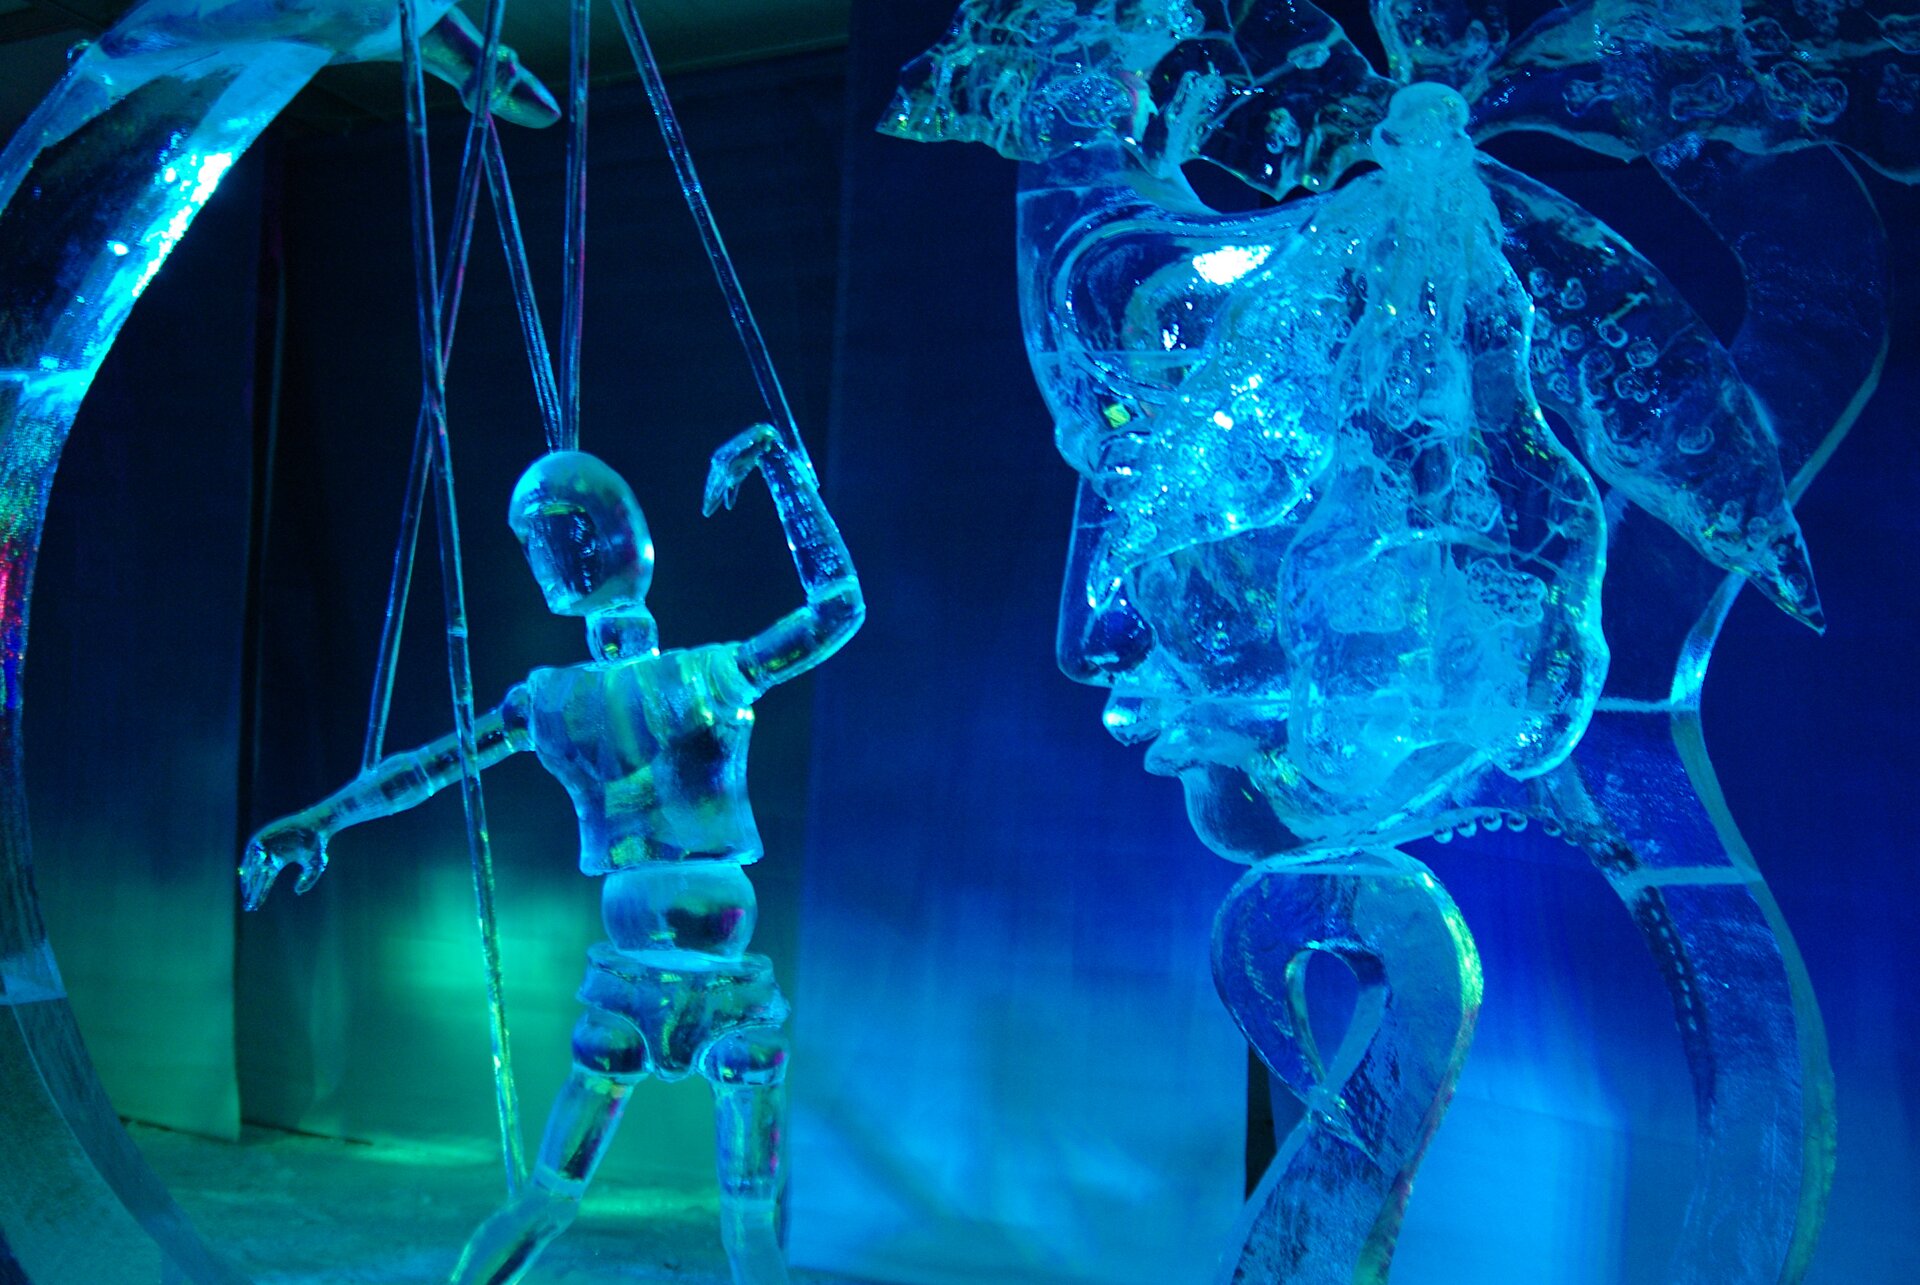 Ilustracja przedstawia rzeźby wykonane z lodu. Z lewej strony znajduje się rzeźba kukiełki na sznurkach, a po prawej stronie rzeźba twarzy. W pomieszczeniu, w którym prezentowane są rzeźby oświetlenie jest niebieskie i zielone. Taki sam kolor mają rzeźby.